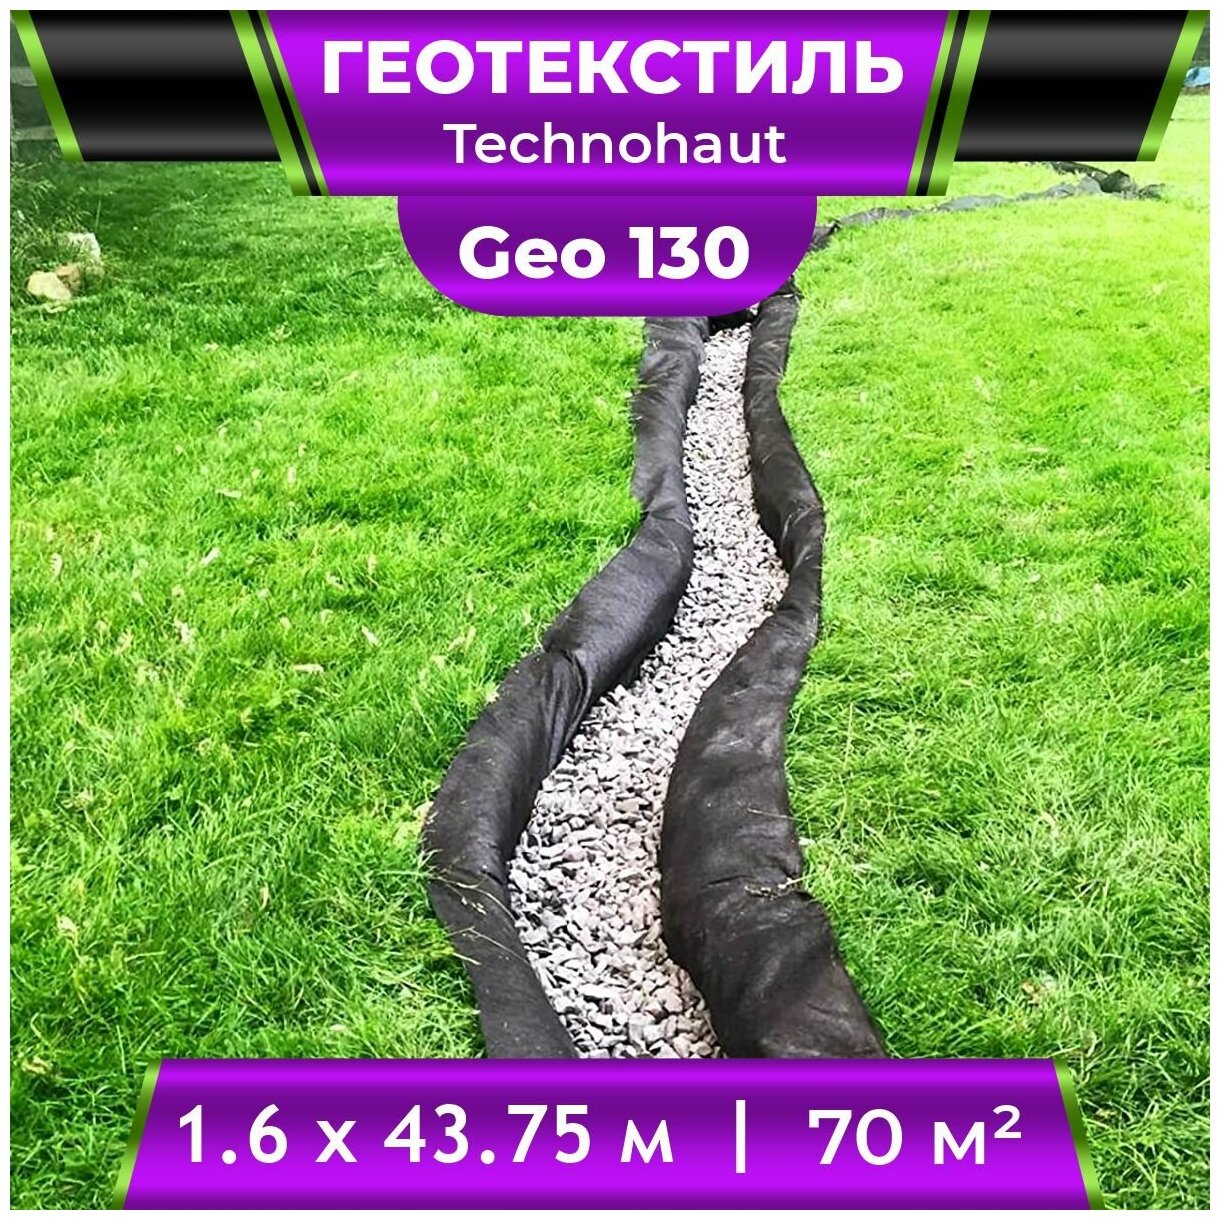 Геотекстиль Technohaut Geo 130 рулон 1,6х43,75м / Геотекстиль нетканый / геотекстиль для дренажа / геотекстиль для сада и огорода - фотография № 1